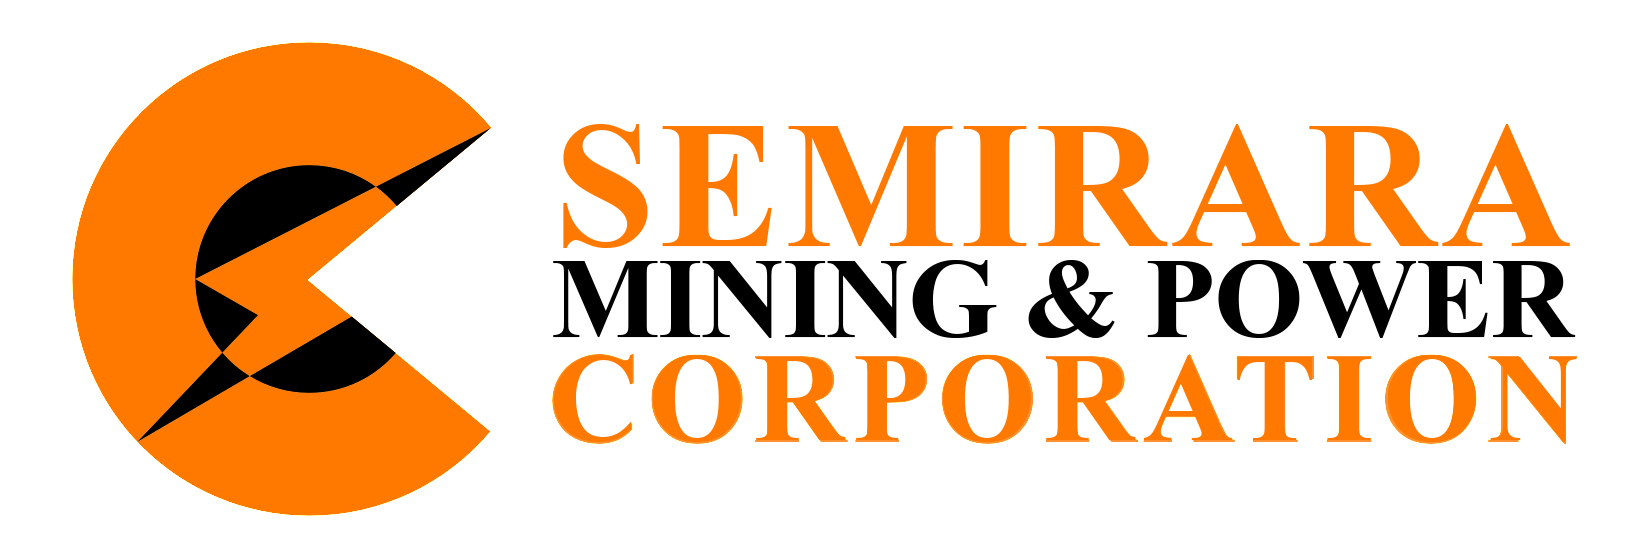 Semirara Mining Power Corp